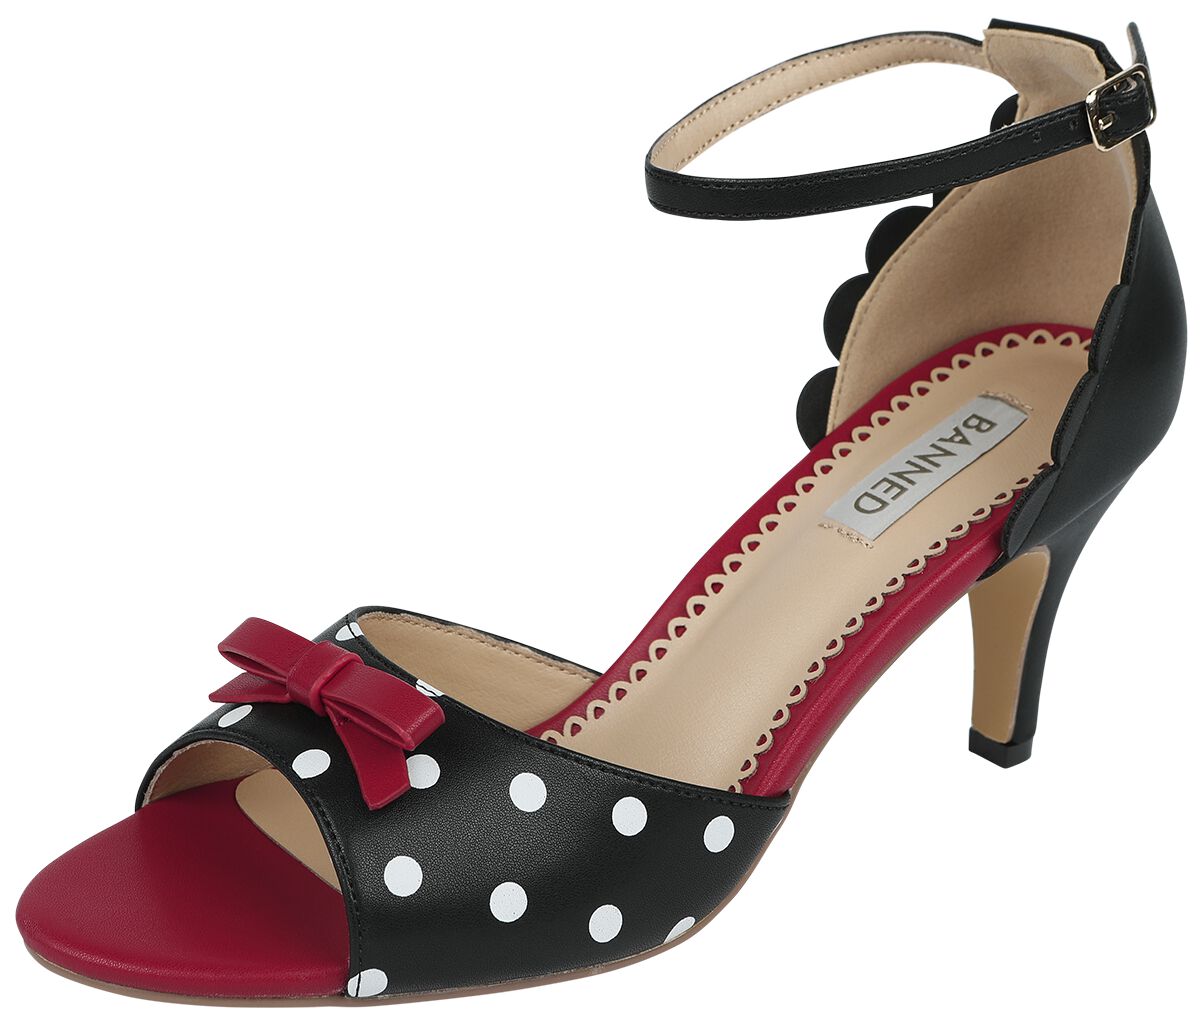 Banned Retro - Rockabilly High Heel - Poppy Polka Open Toe Sandals - EU36 bis EU41 - für Damen - Größe EU40 - schwarz/rot